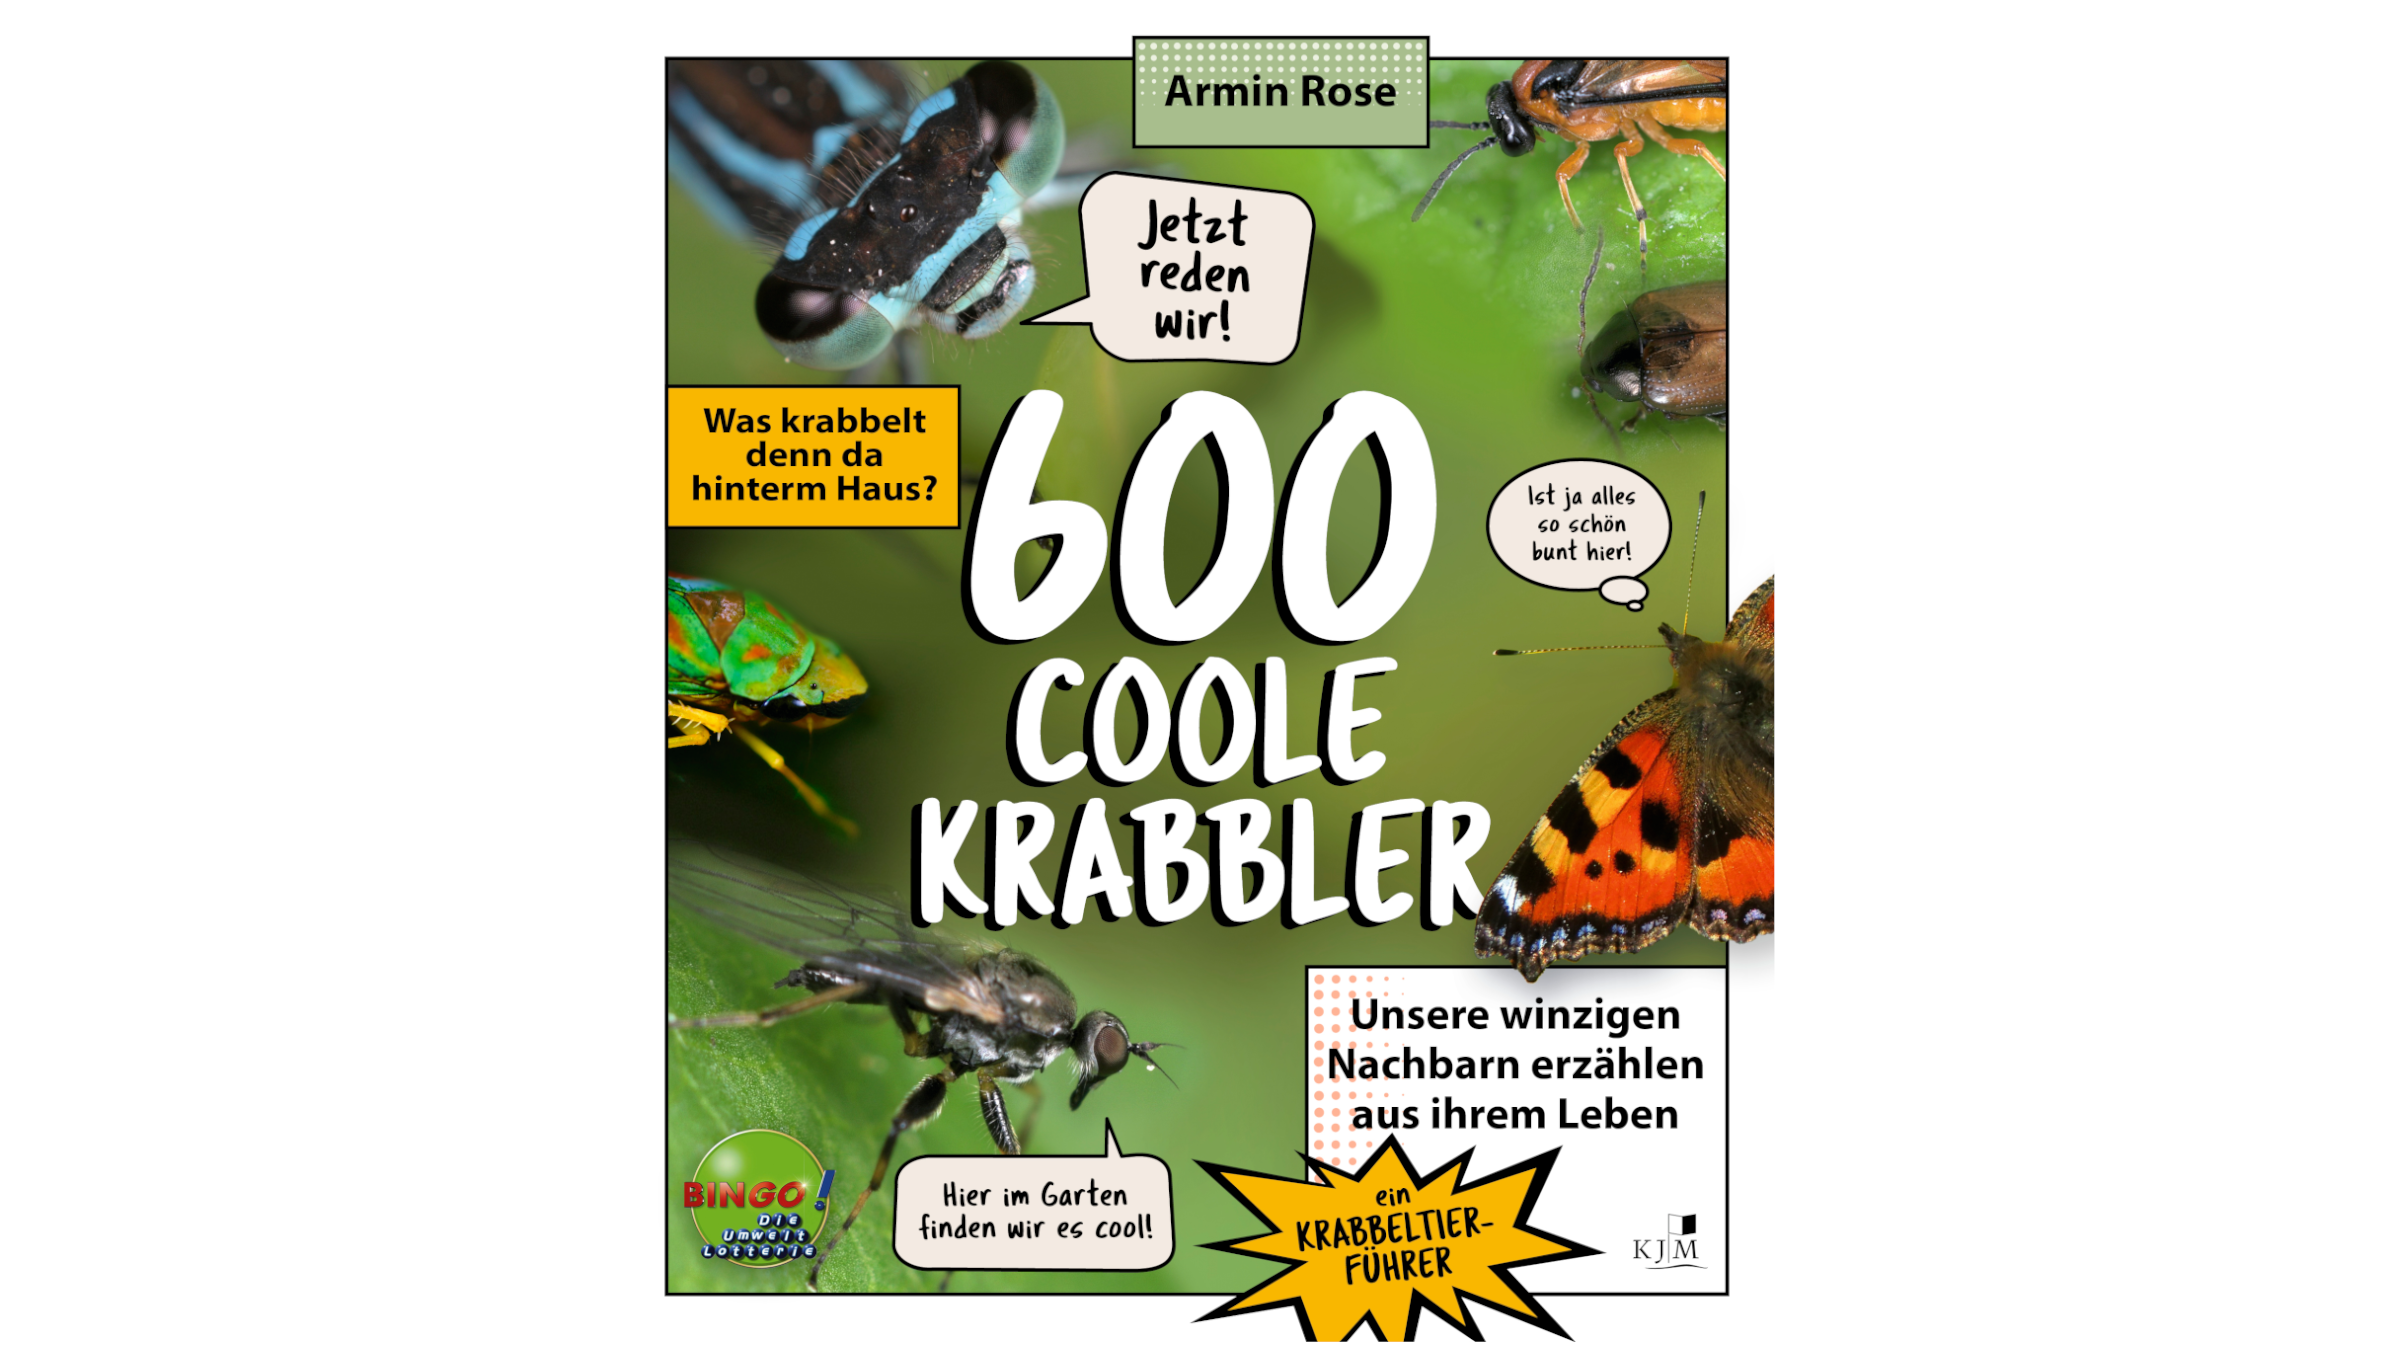 Buchcover Vorderseite des Buches "600 coole Krabbler" auf dem mehrere Insekten zu sehen sind.